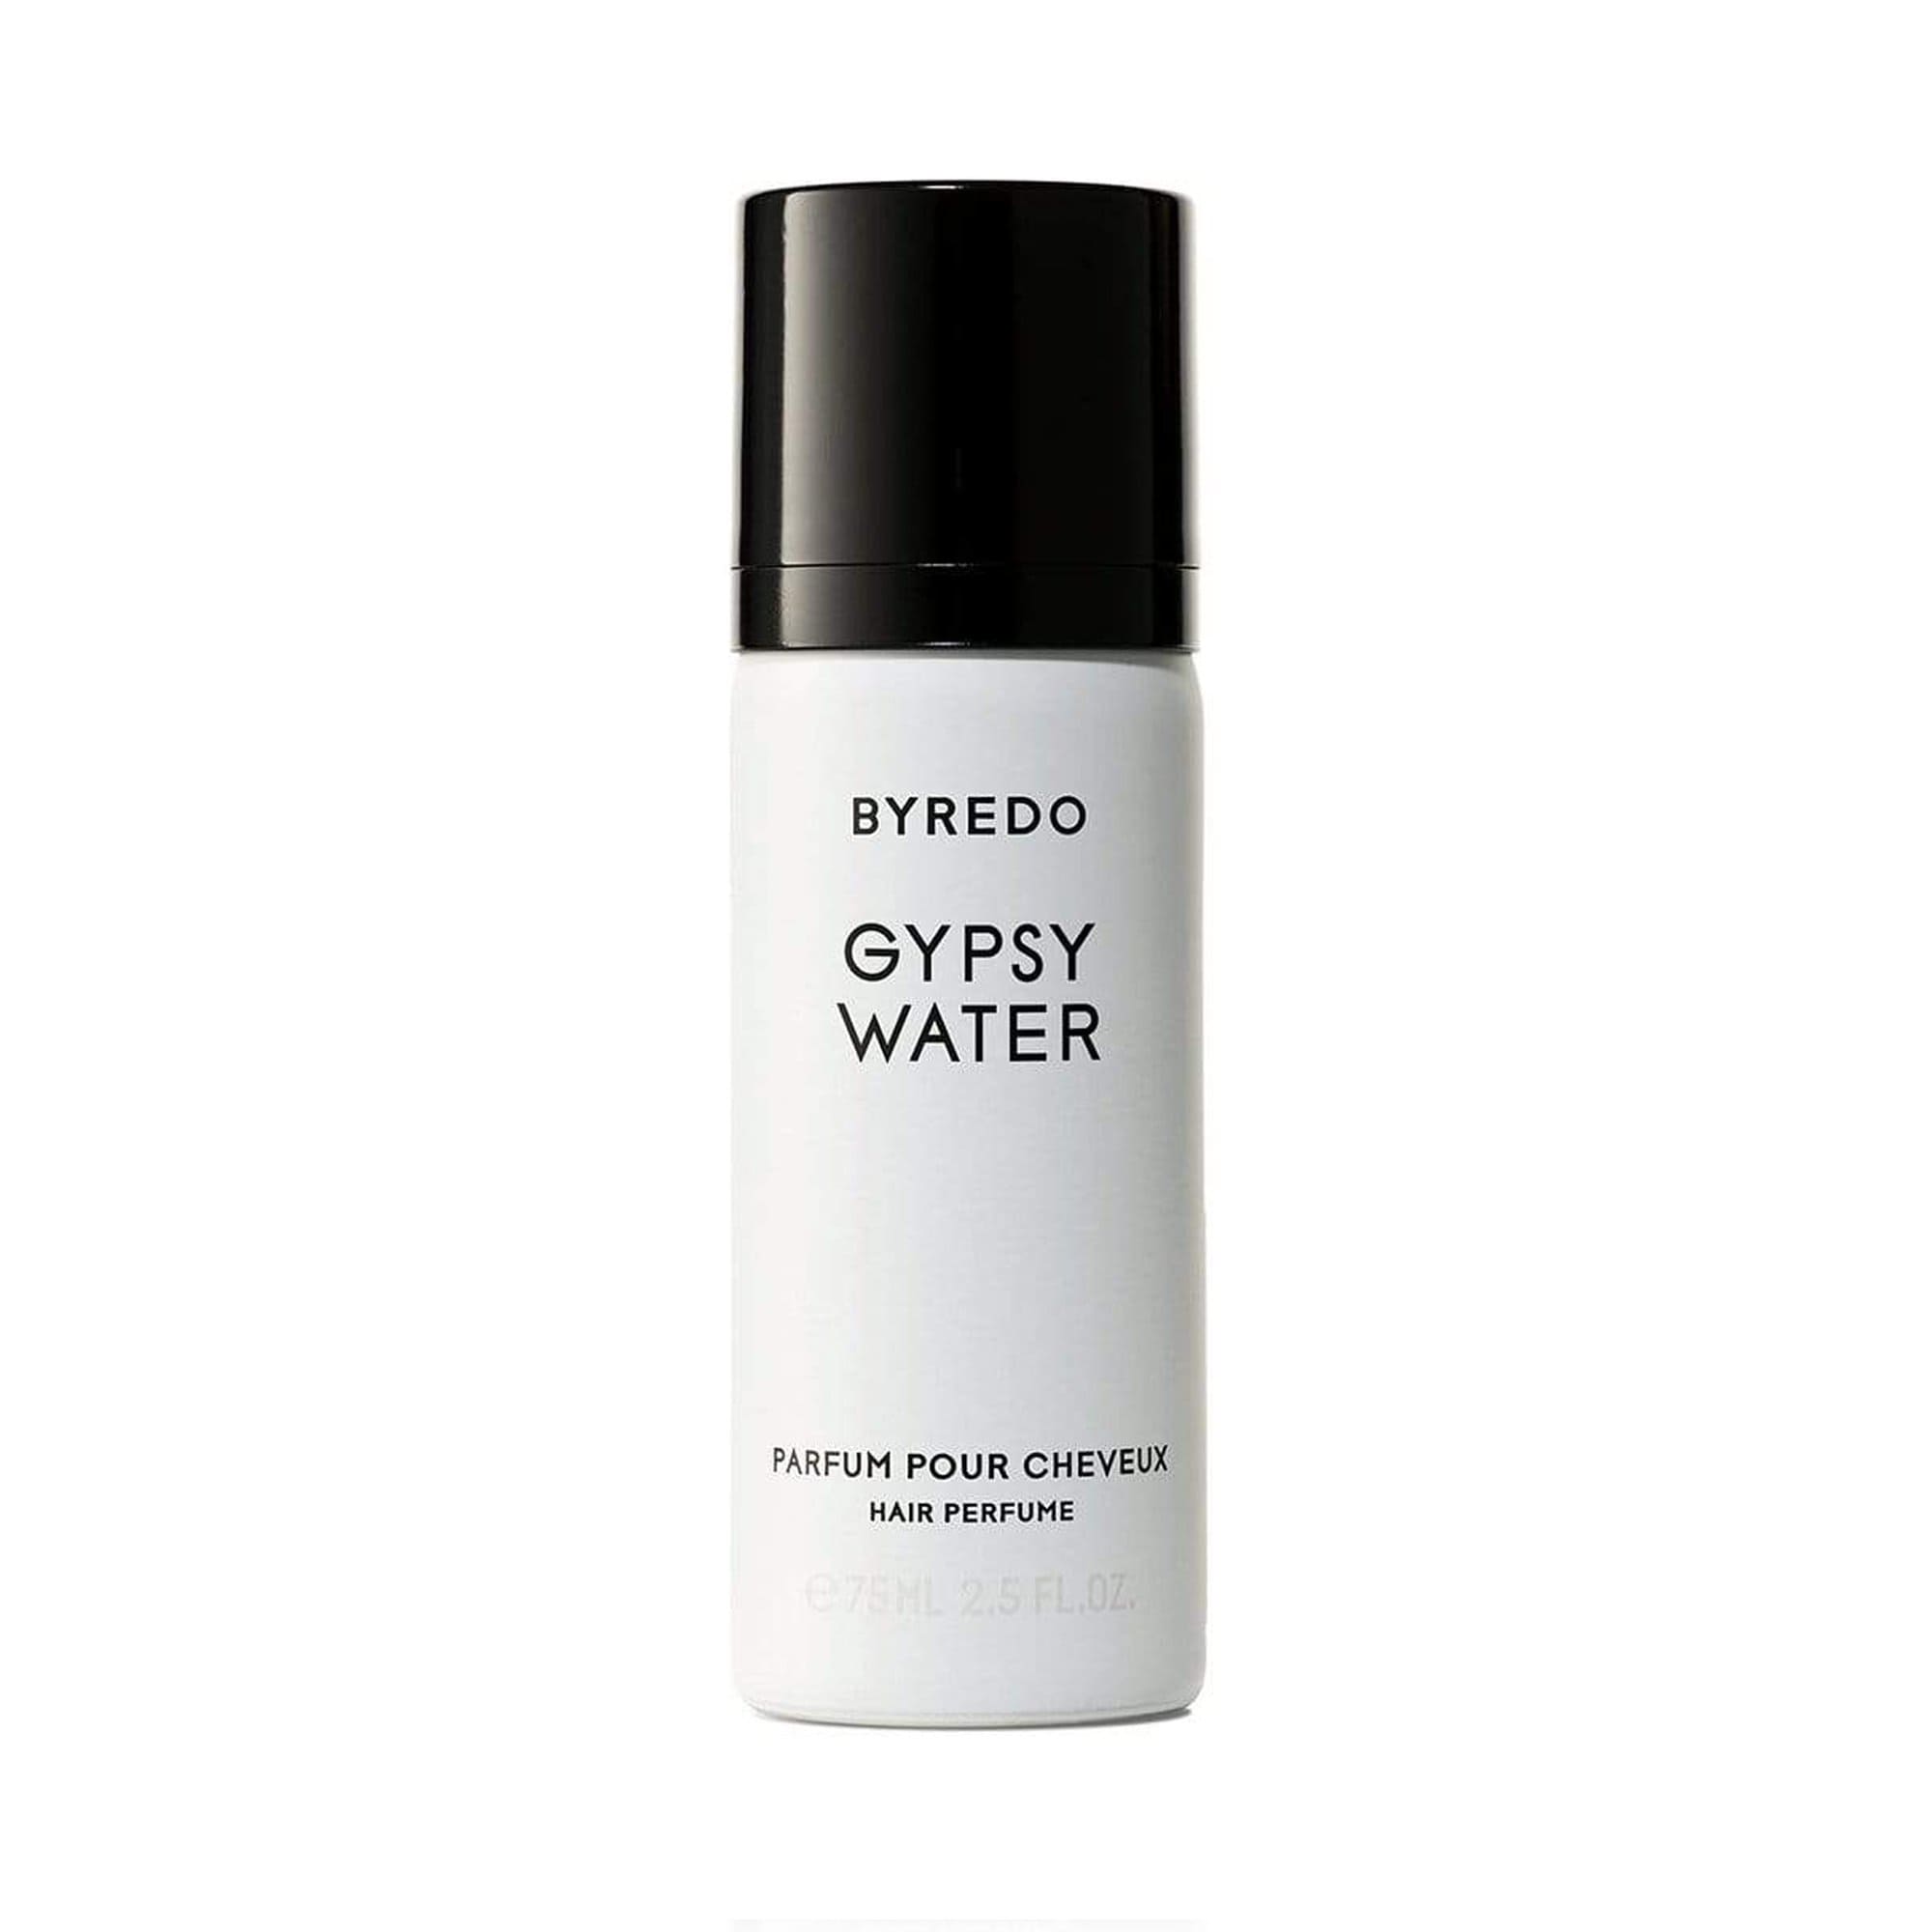 Gypsy Water de BYREDO Perfume para el pelo